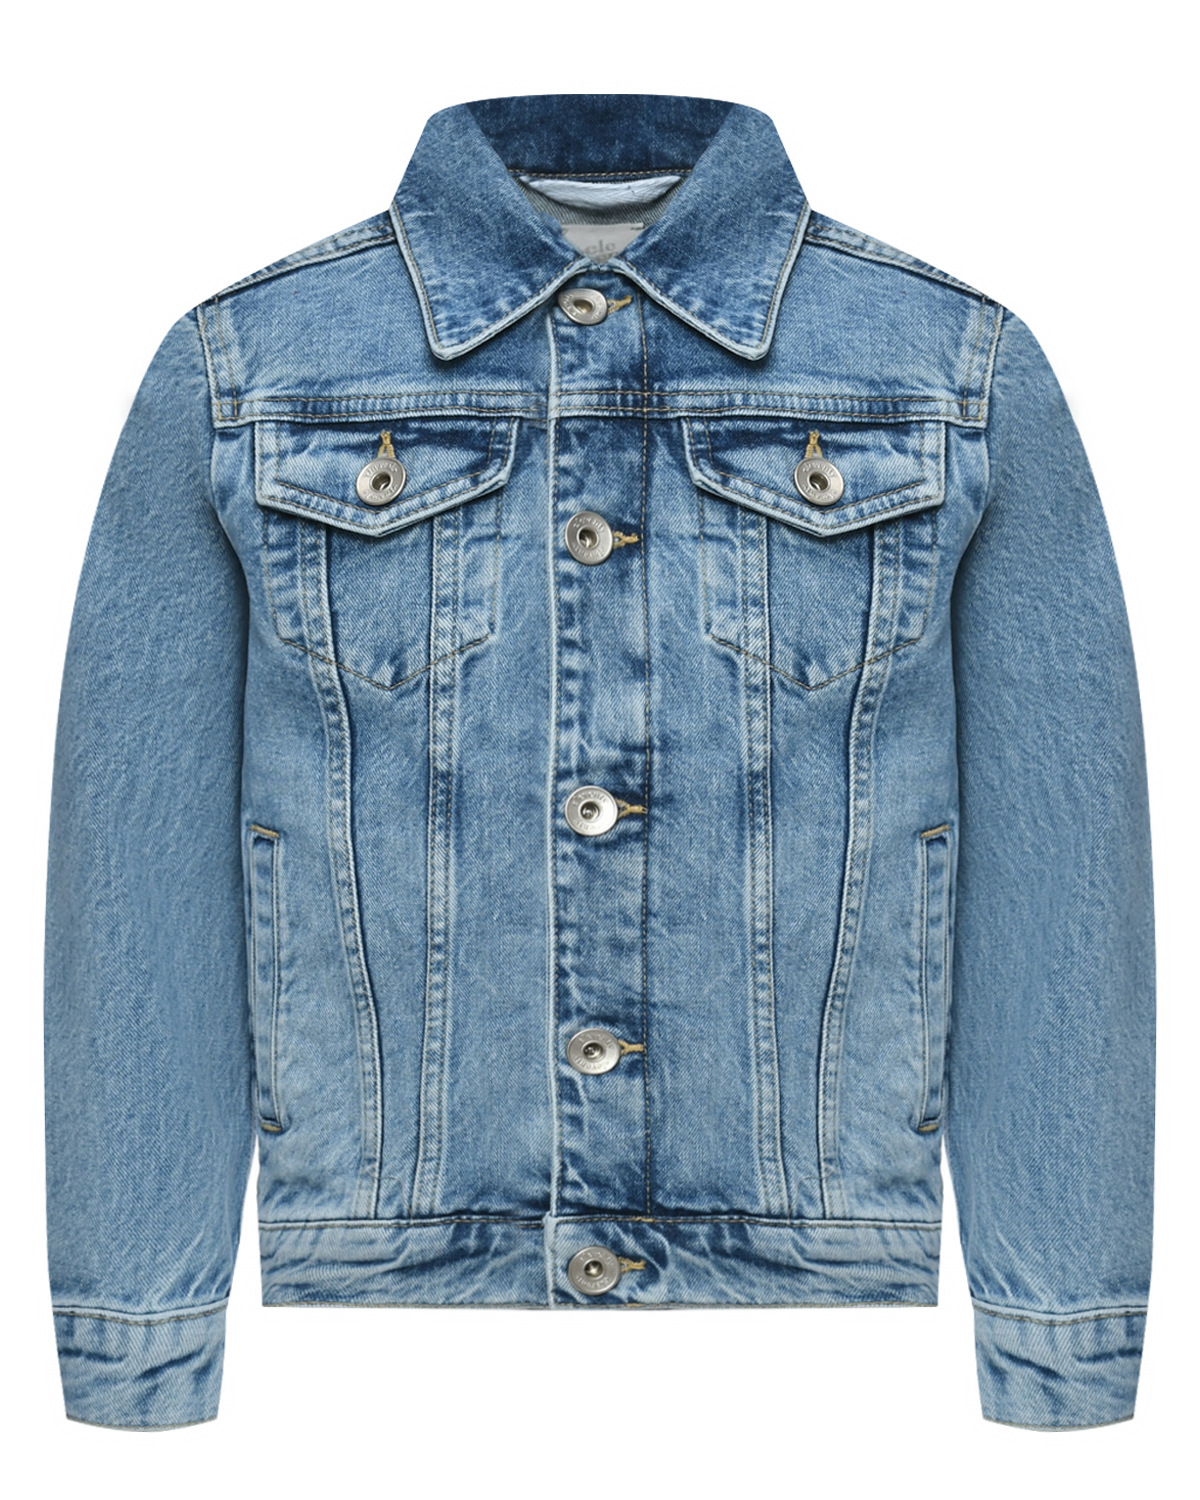 Джинсовая куртка, голубая Eleventy, размер 164, цвет нет цвета